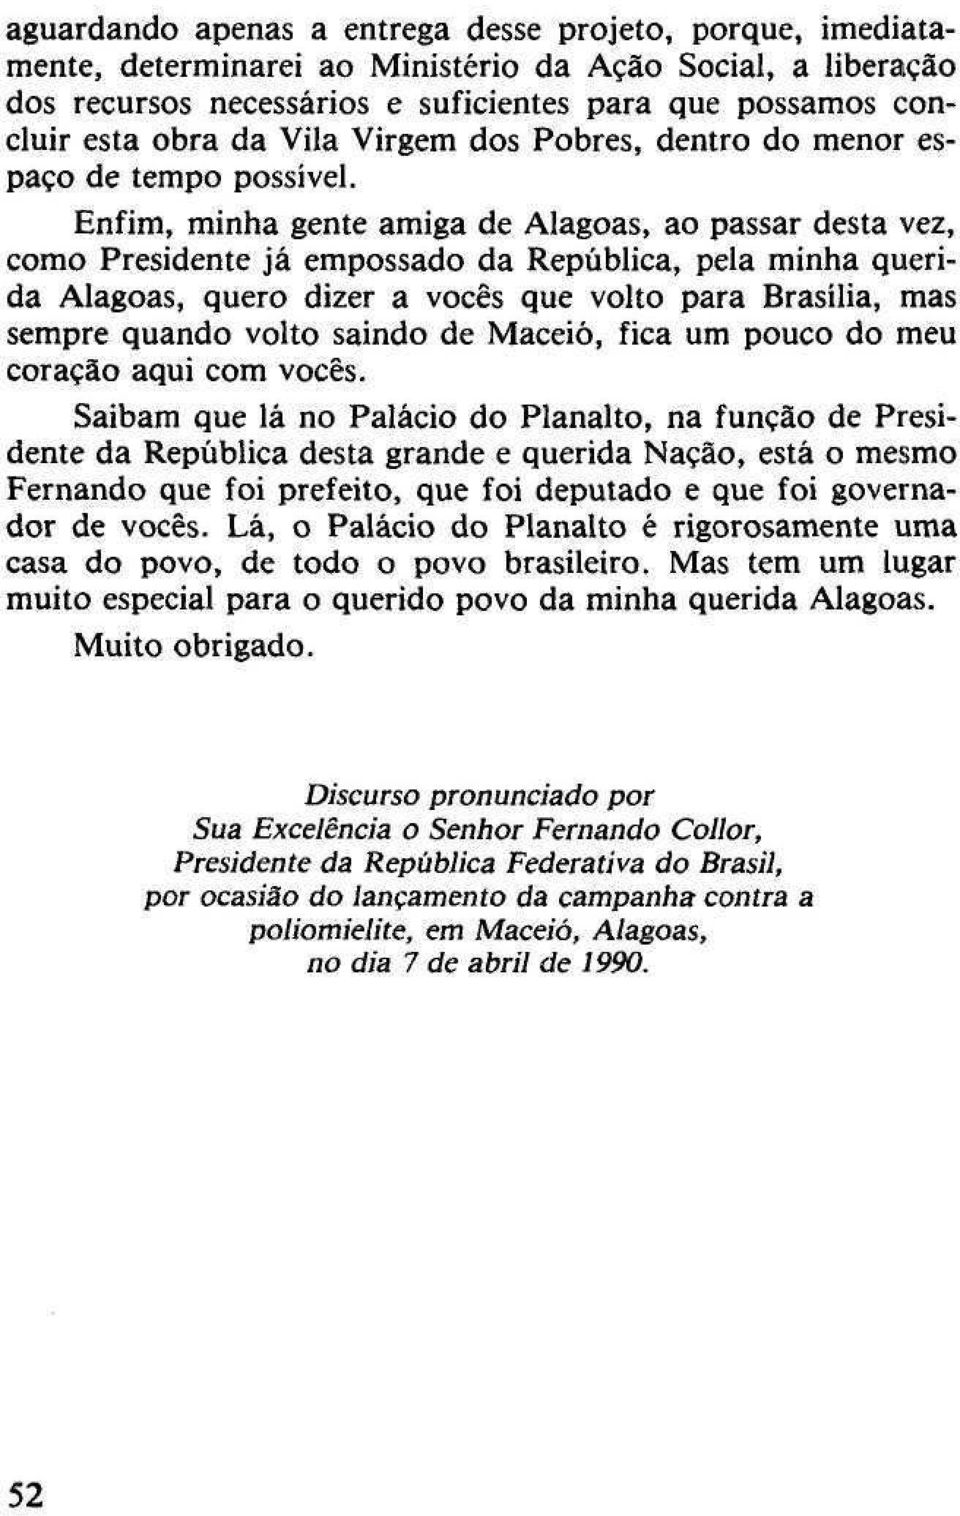 Enfim, minha gente amiga de Alagoas, ao passar desta vez, como Presidente já empossado da República, pela minha querida Alagoas, quero dizer a vocês que volto para Brasília, mas sempre quando volto